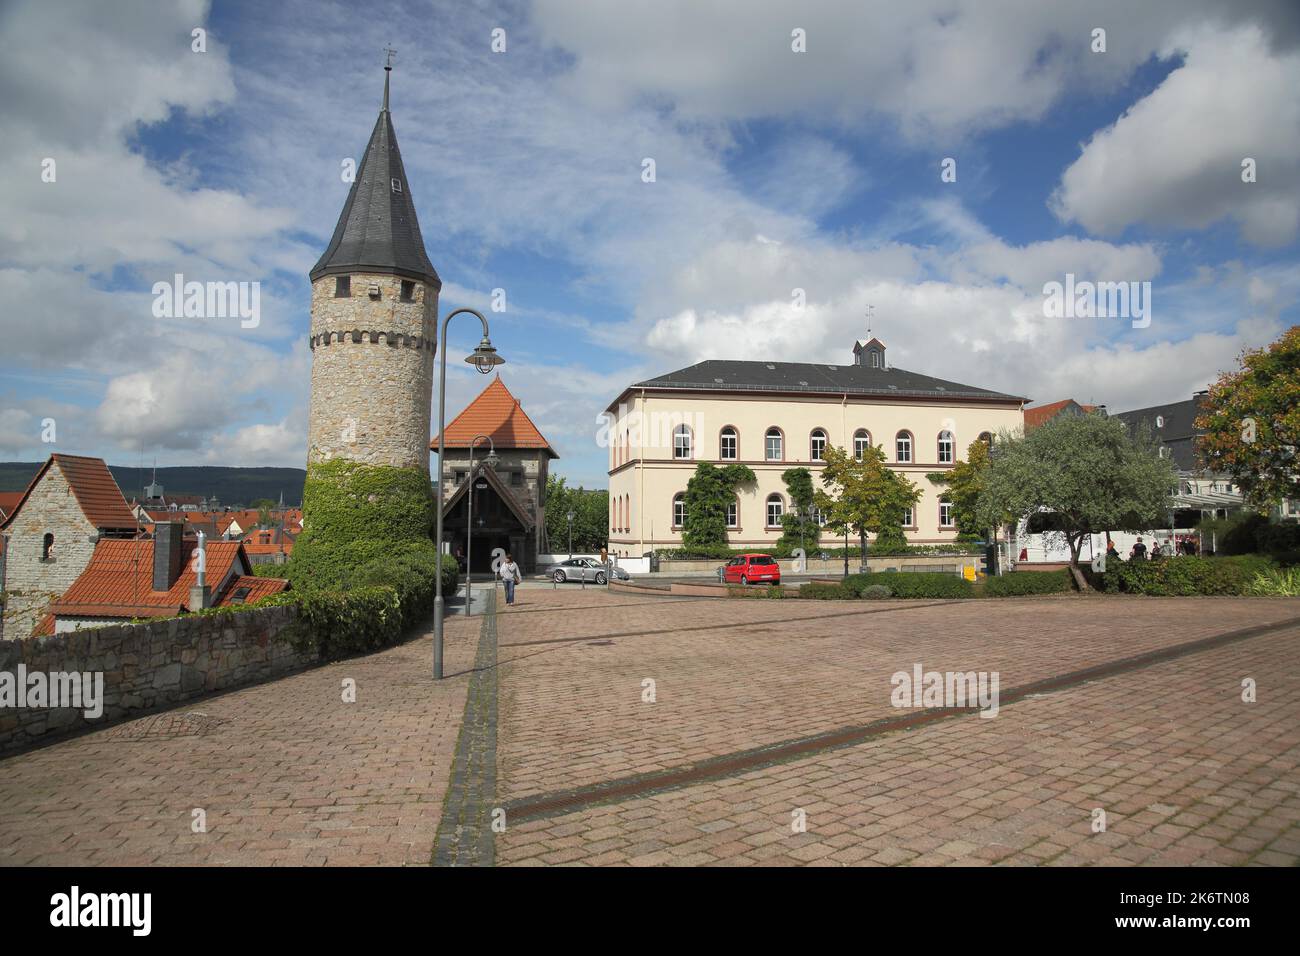 Schlossplatz con la Torre delle streghe e la Scuola del Conte Ludwig, Bad Homburg, Taunus, Assia, Germania Foto Stock